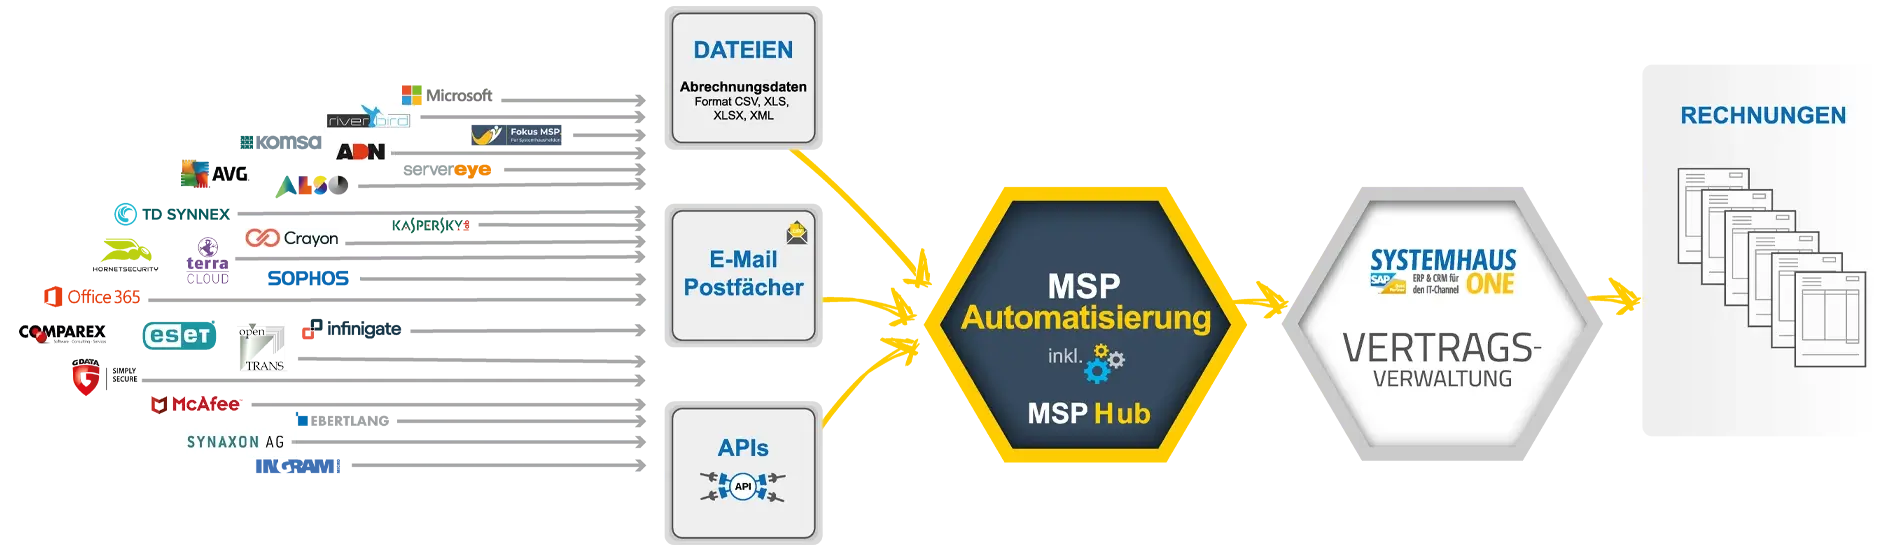 MSP Automatisierung mit Systemhaus.One